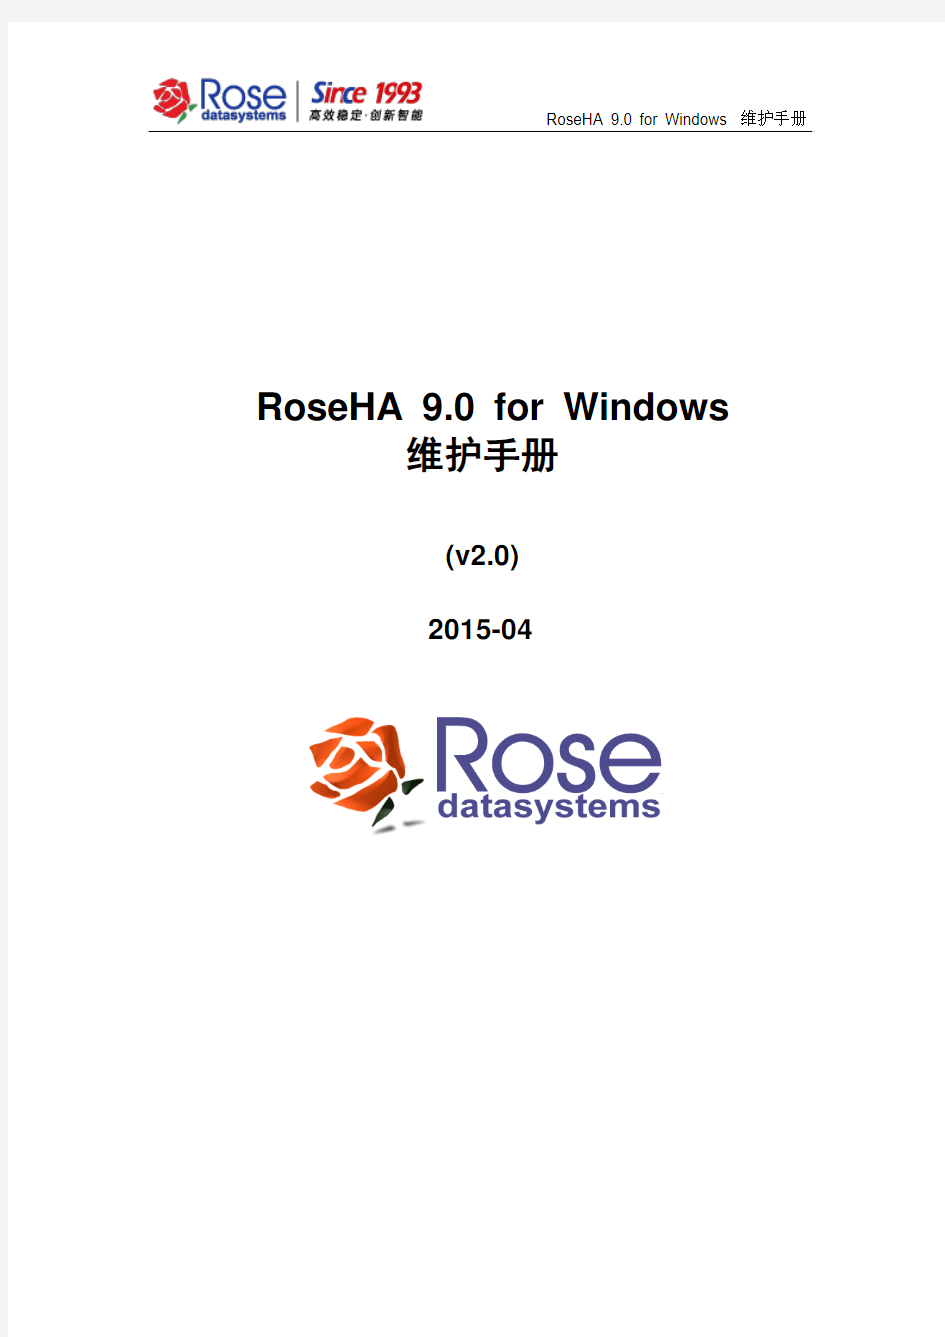 RoseHA 9.0 for Windows维护手册_v2.0-2015-04